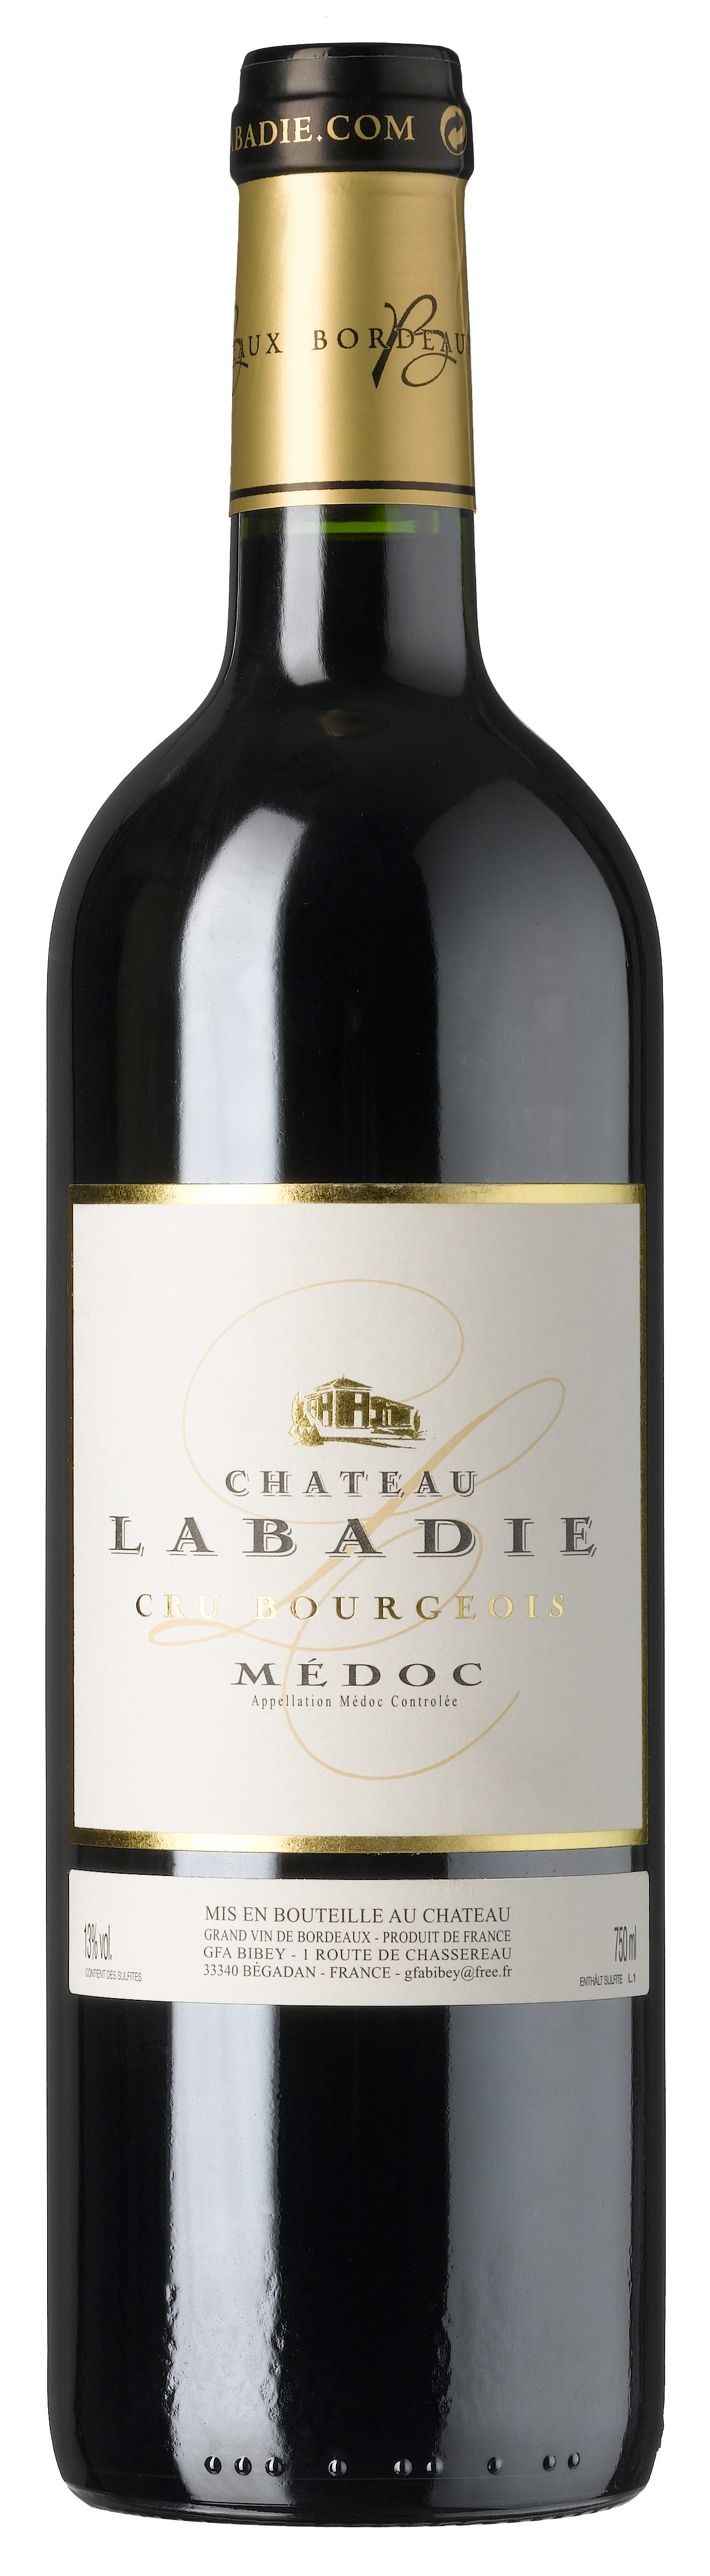 Château Labadie 2018 Cru Bourgeois Médoc AC                 